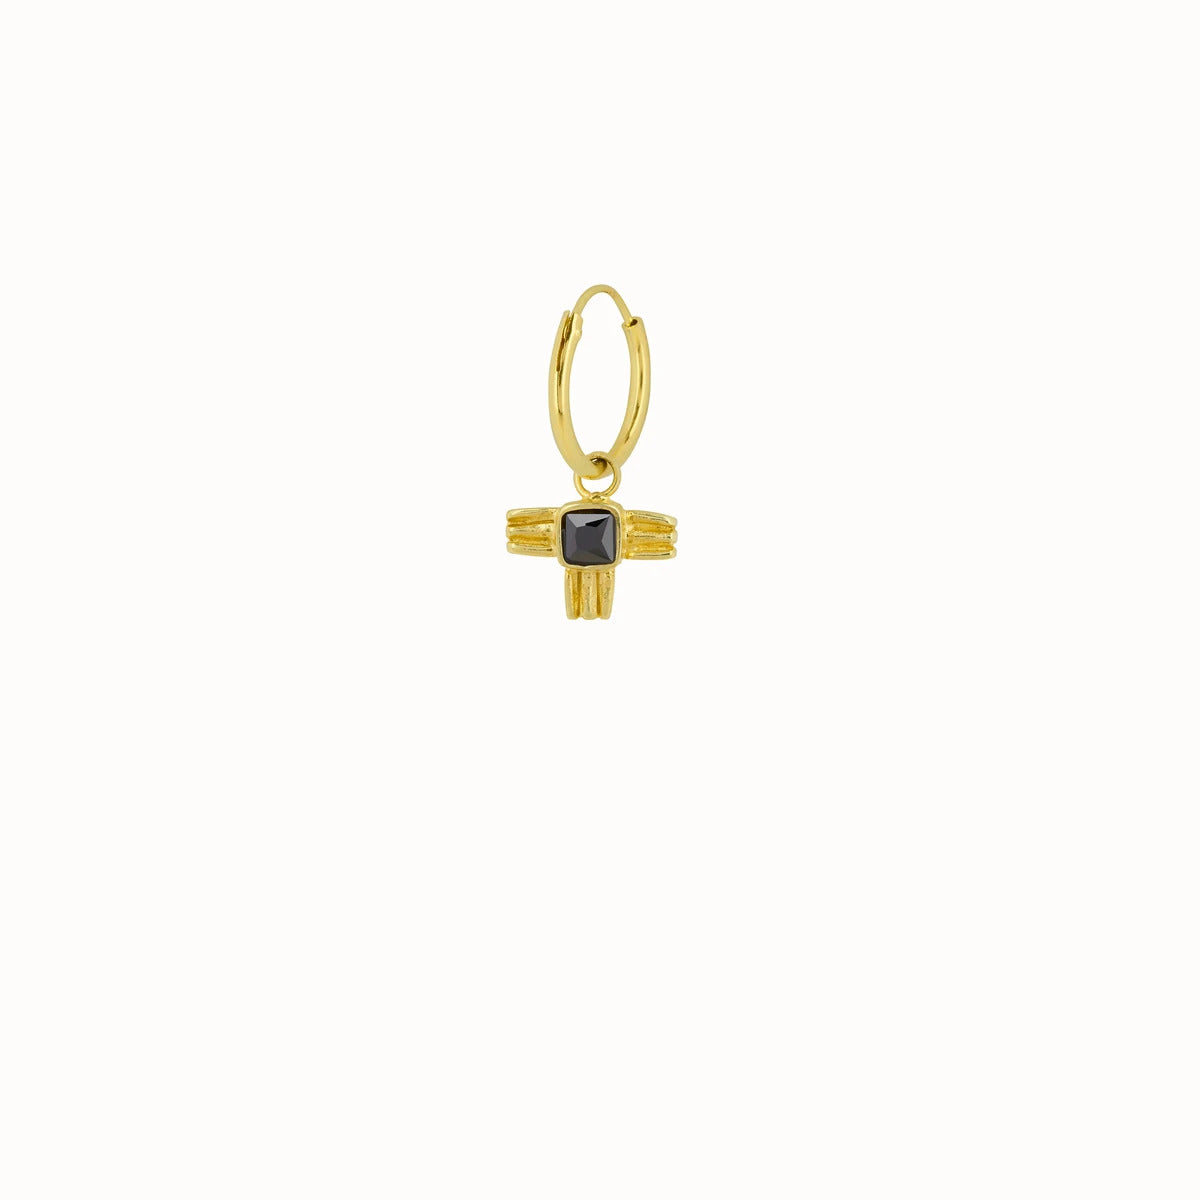 De Sculpted Wing Hoop is een 12mm hoop en is eenvoudig te combineren met andere hoops of studs. Creëer een supertoffe earparty met minimalistische studs en catchy hoops. Bij Boetiek Aniek vind je goudkleurige oorbellen, kettingen, hangers en armbanden. Shop de mooiste sieraden bij online Fashion Boetiek Aniek.